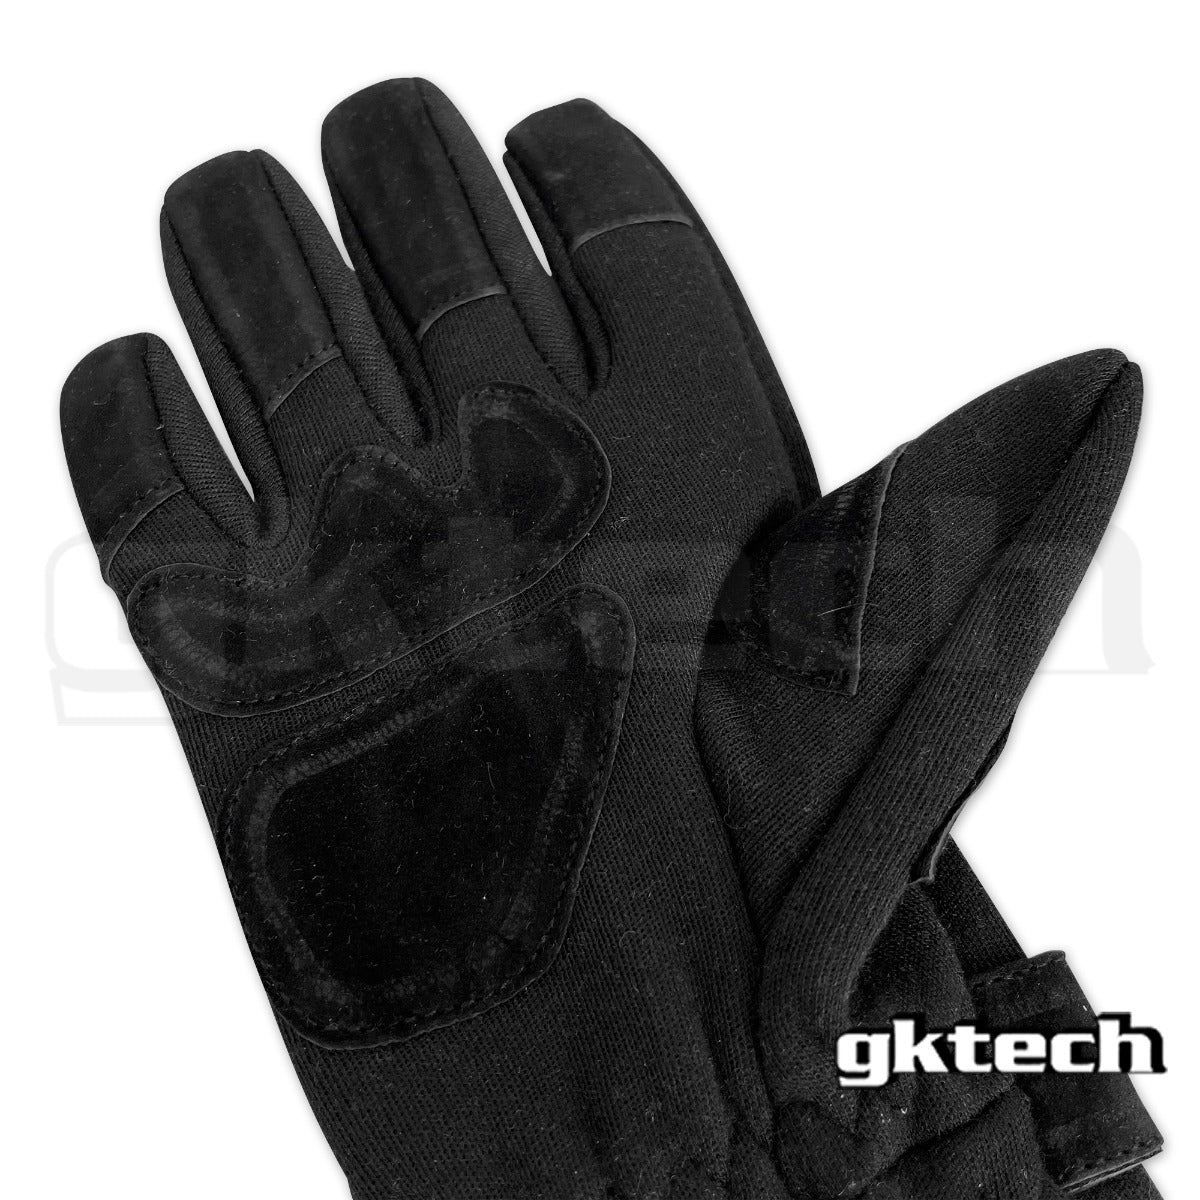 GKtech Racing gloves